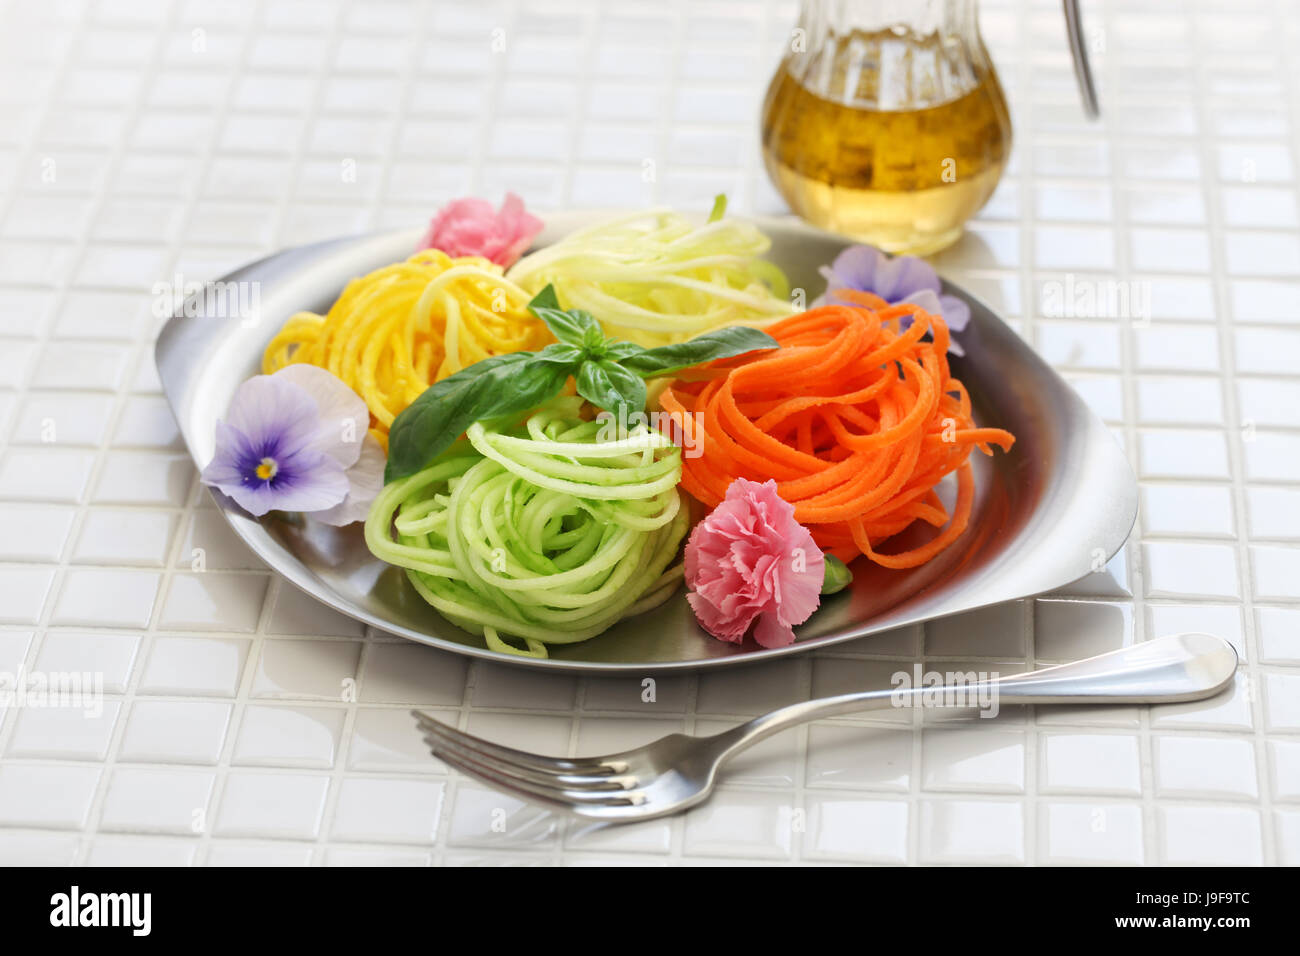 Sana alimentazione vegetale insalata di tagliatelle, cibo vegetariano Foto Stock